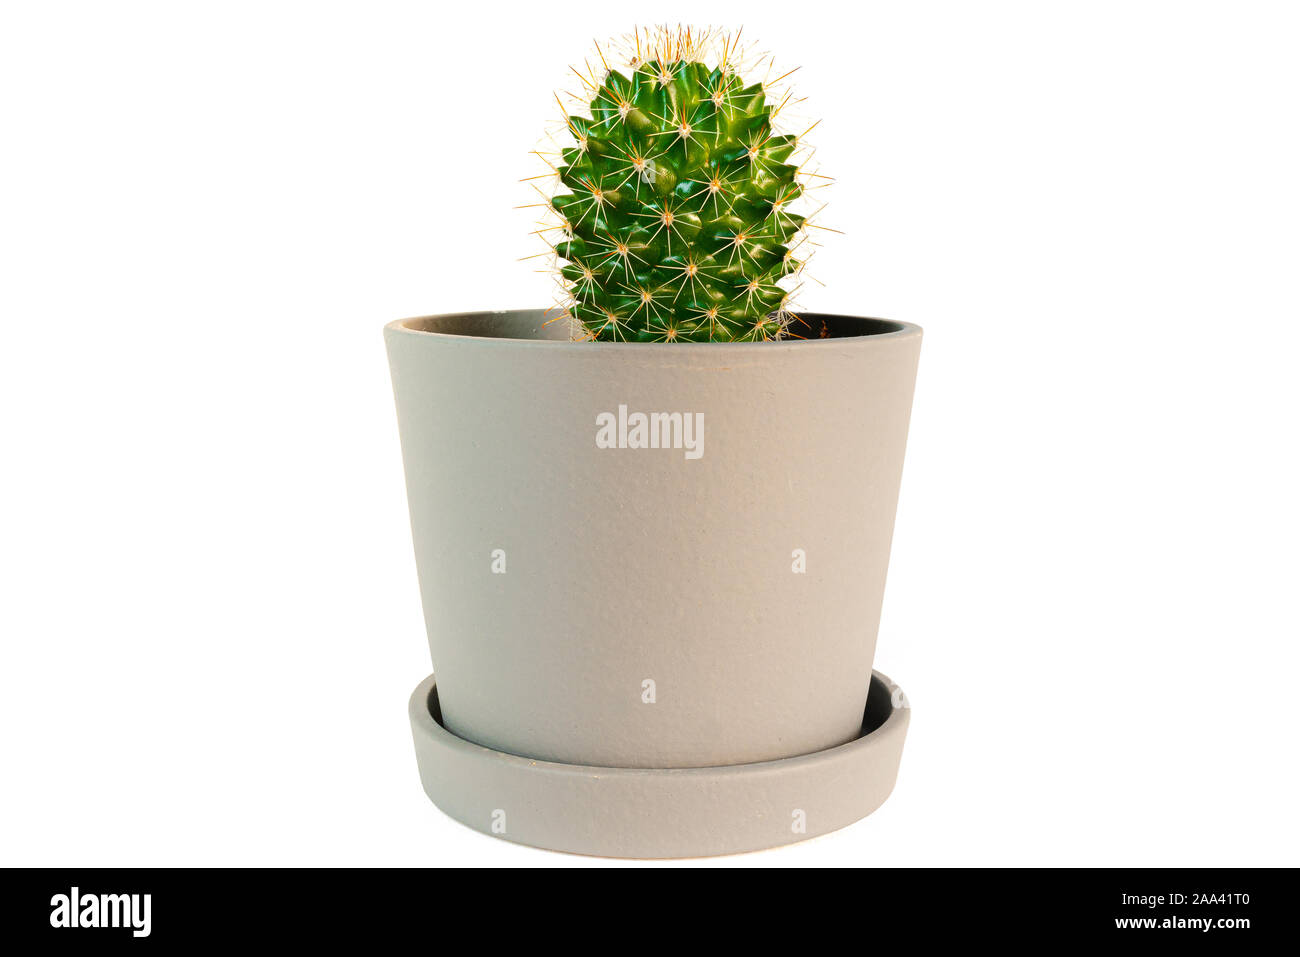 Piccoli vasi di cactus impianto isolato su sfondo bianco Foto Stock